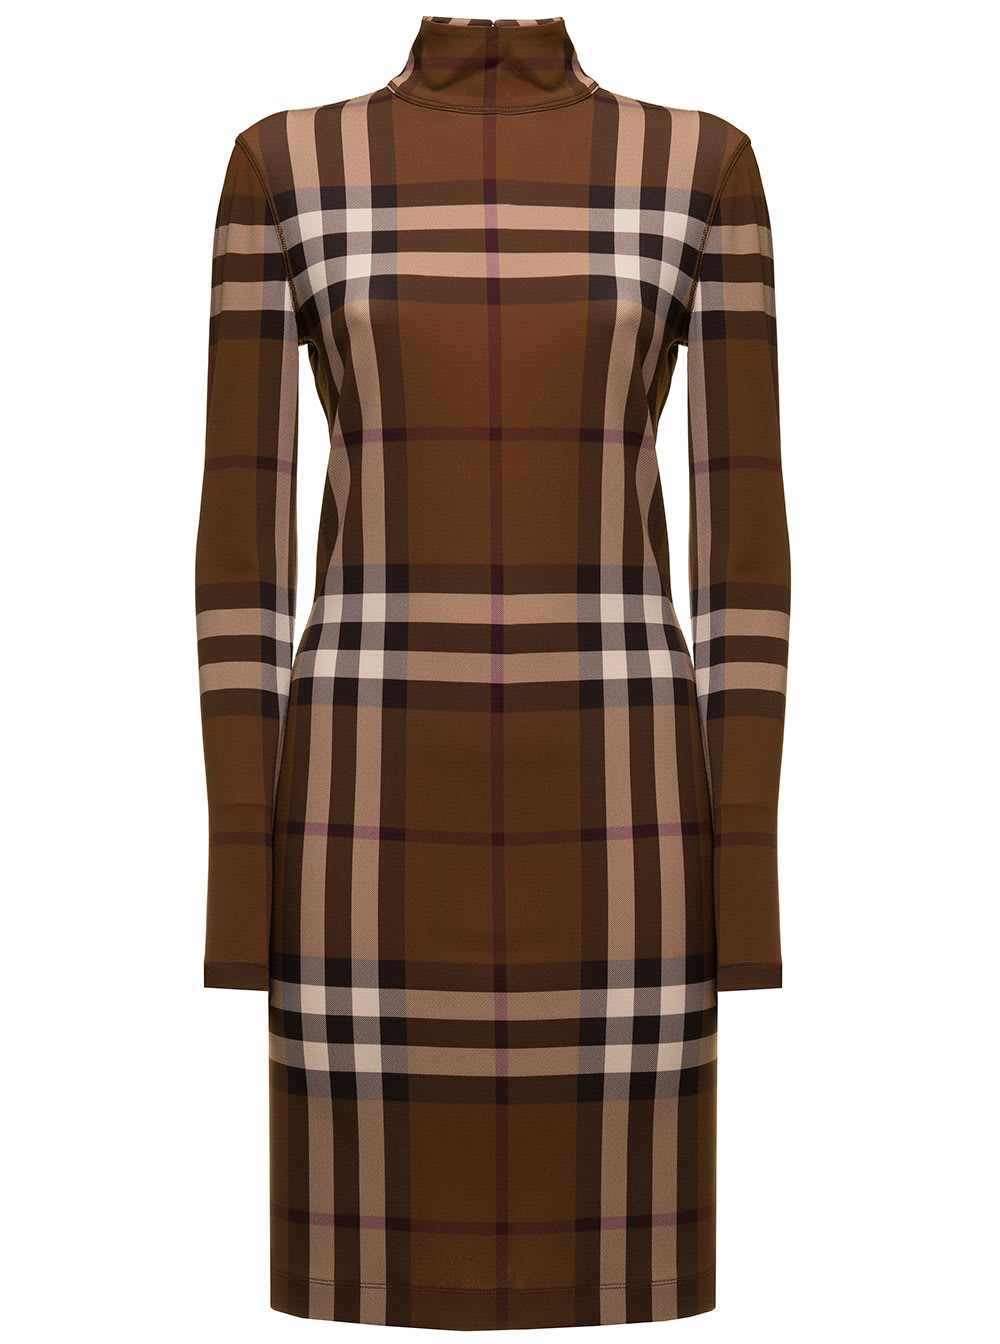 Gemma Brown Jersey Check Dress Burberry Woman